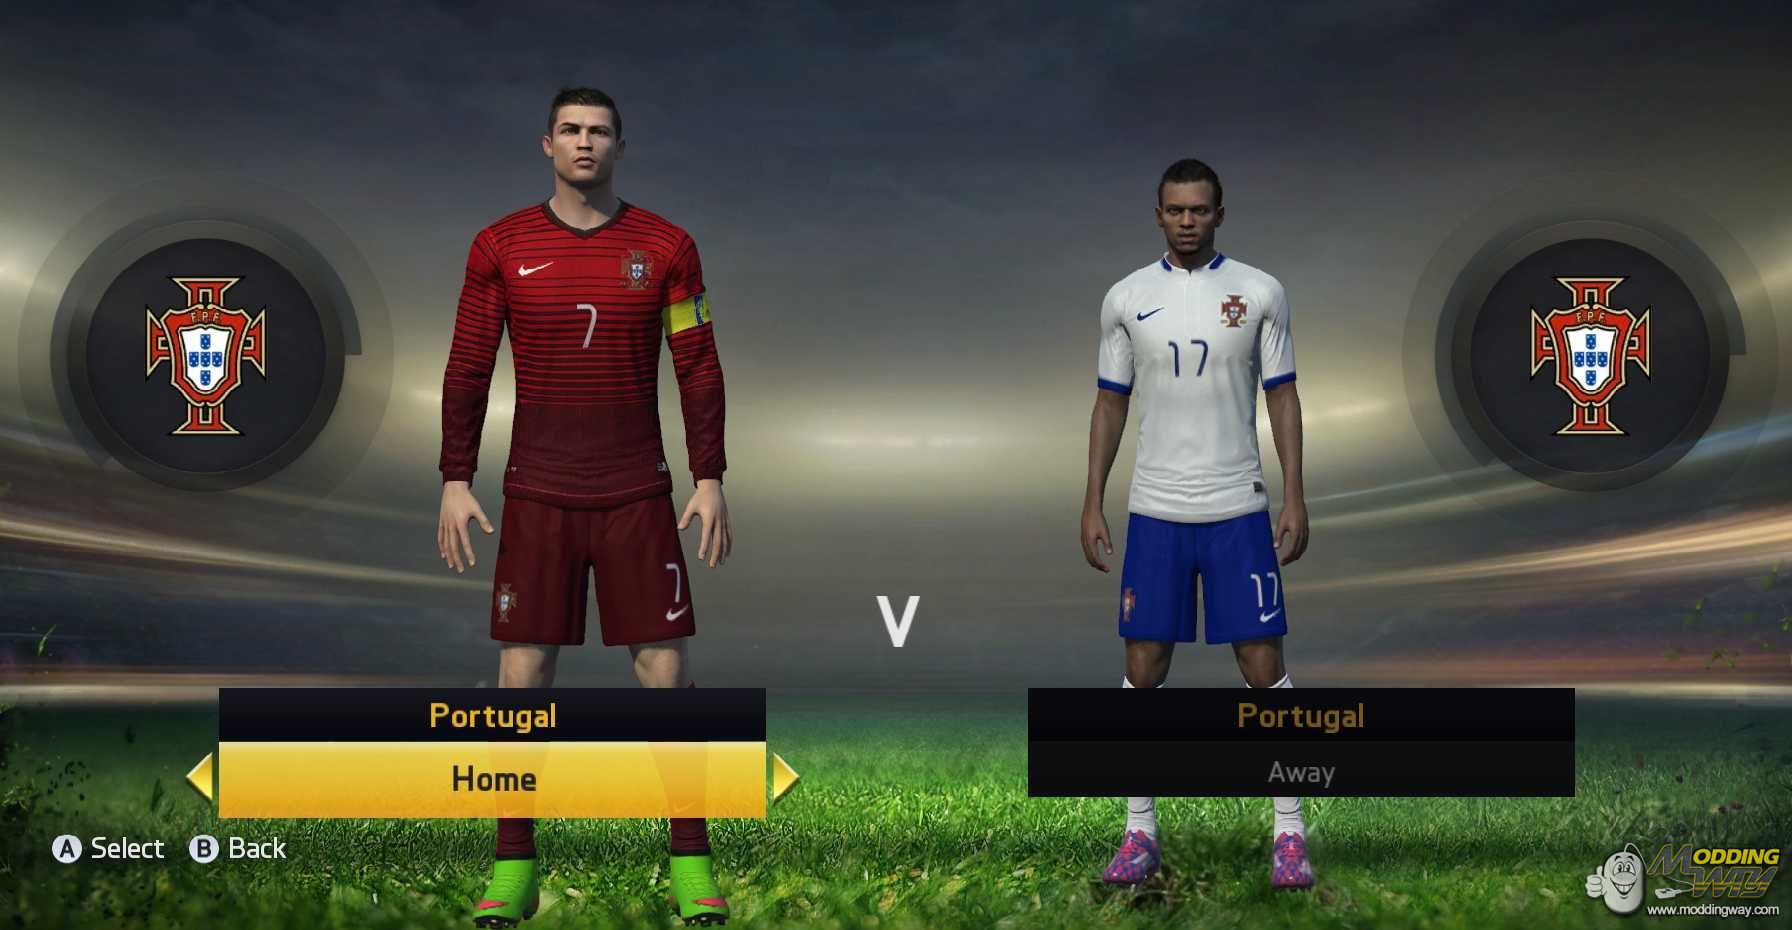 FIFA 15 Moddingway Mod v 0.5.0